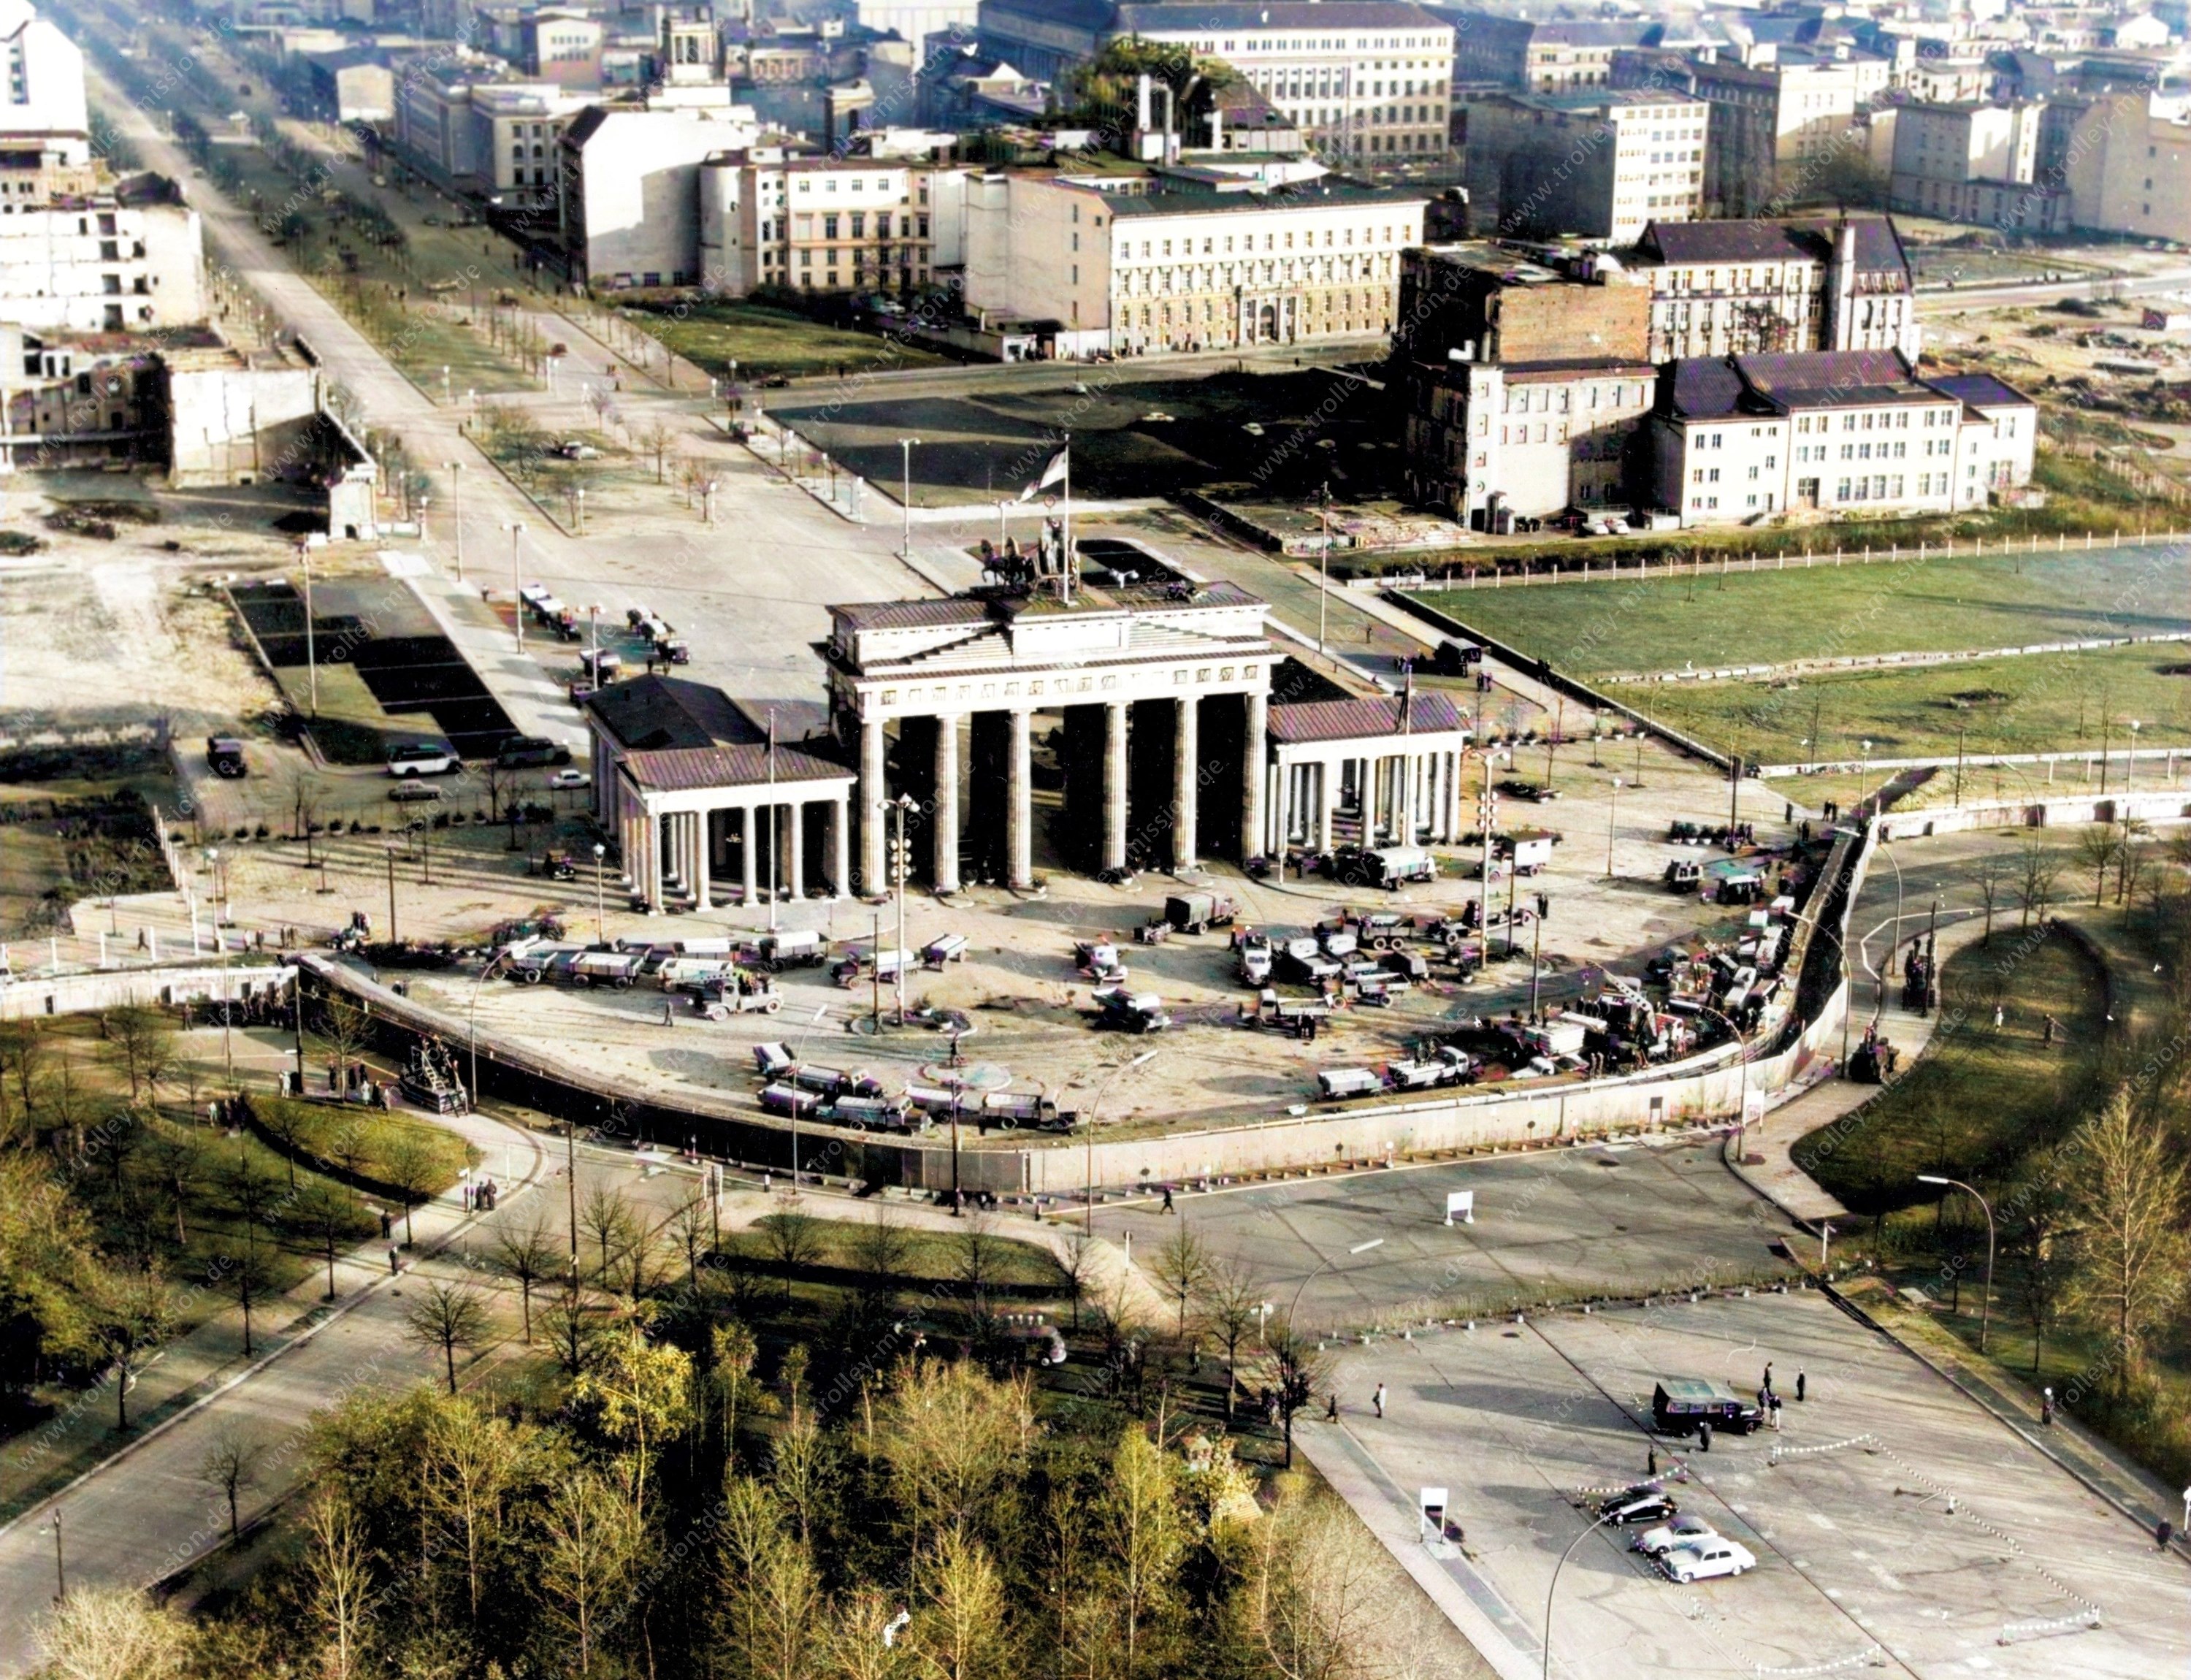 Am 30. November 1961, als diese Luftaufnahme gemacht wurde, ist eine Vielzahl an Baufahrzeugen und Bauarbeitern vor dem Brandenburger Tor damit beschäftigt, eine überdurchschnittlich breite Panzermauer auf dem Pariser Platz zu betonieren.